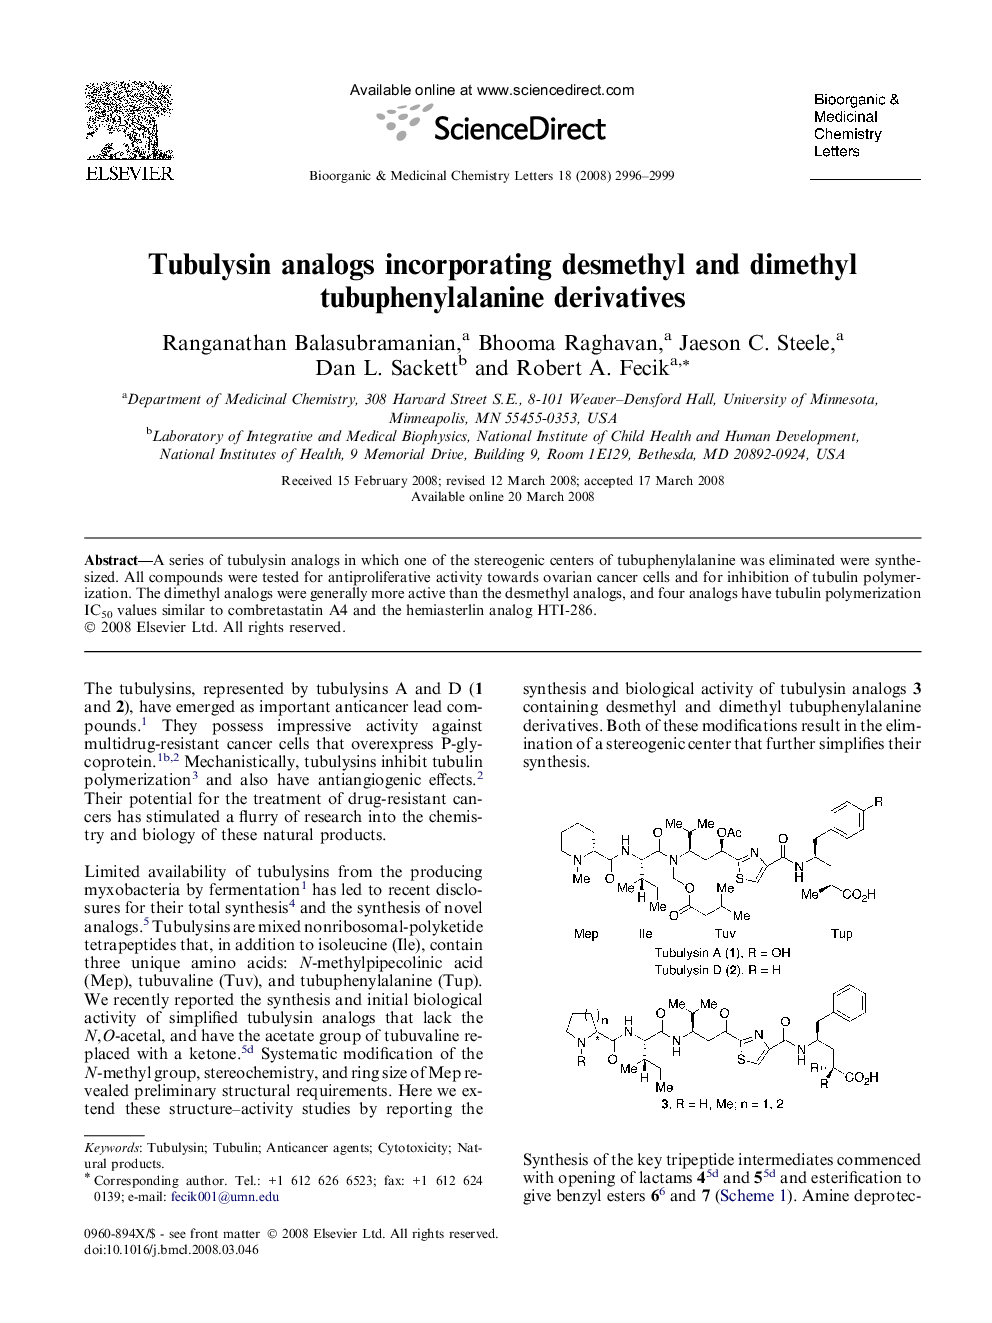 Tubulysin analogs incorporating desmethyl and dimethyl tubuphenylalanine derivatives